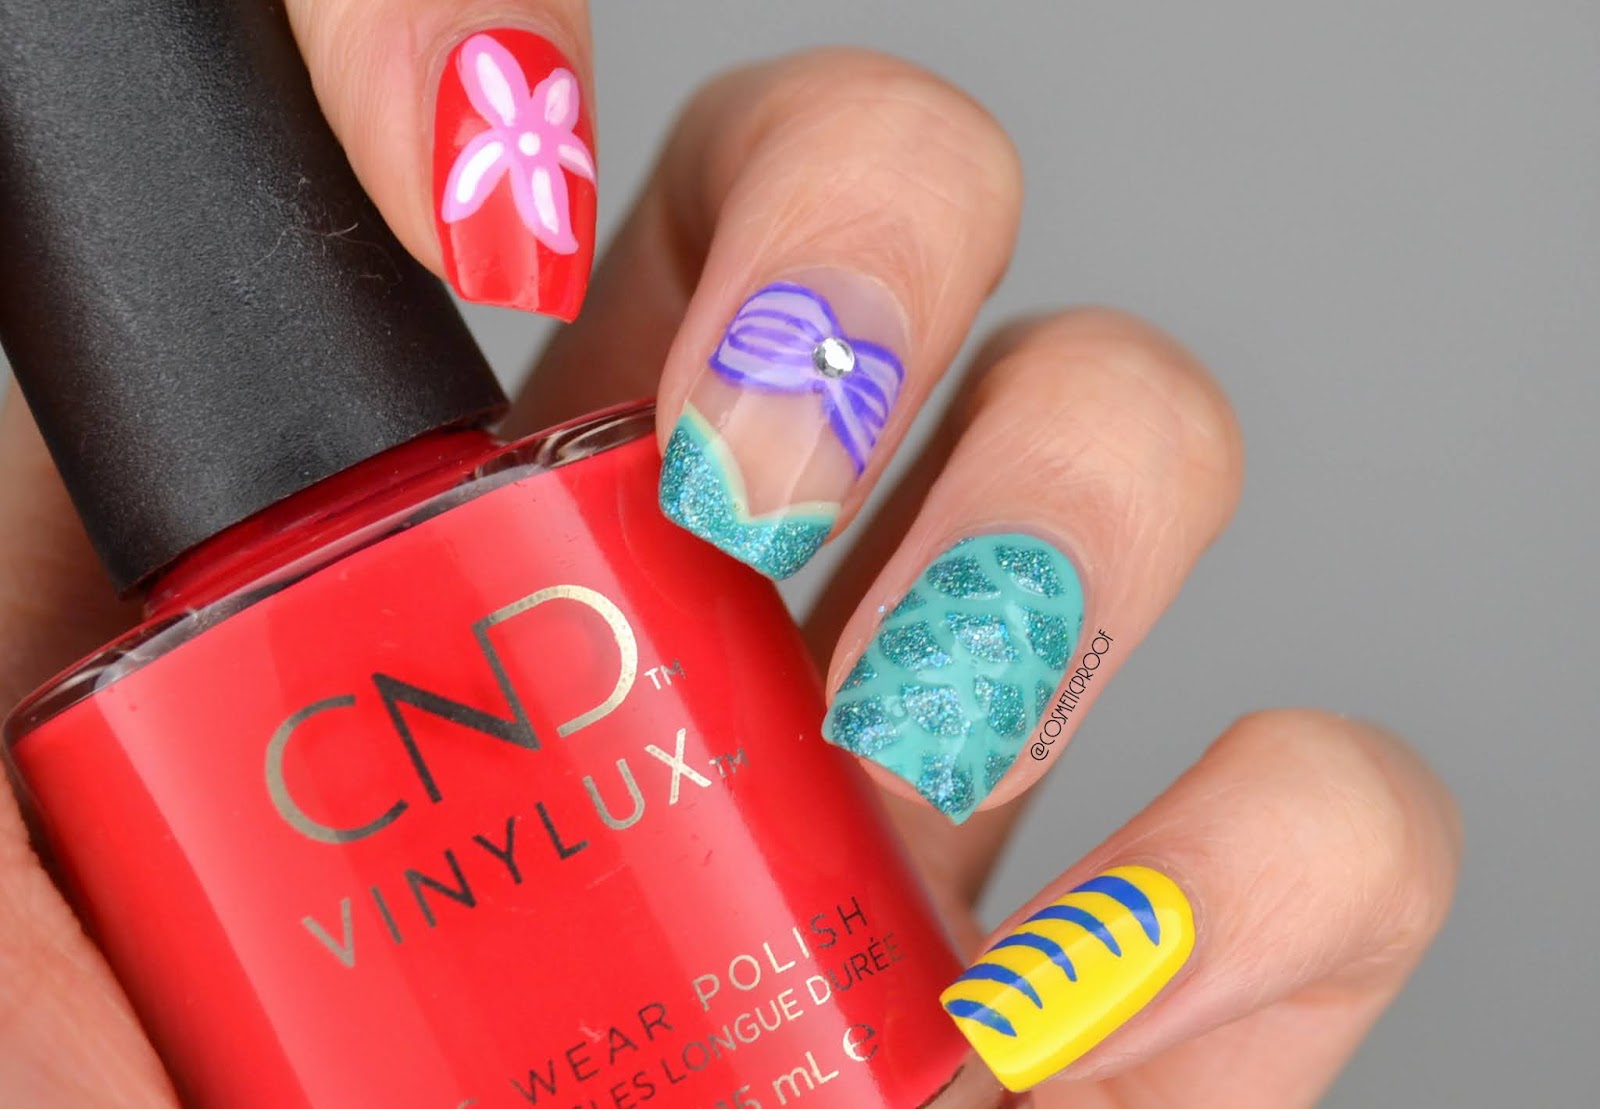 3. Mermaid Wave Nails - wide 8